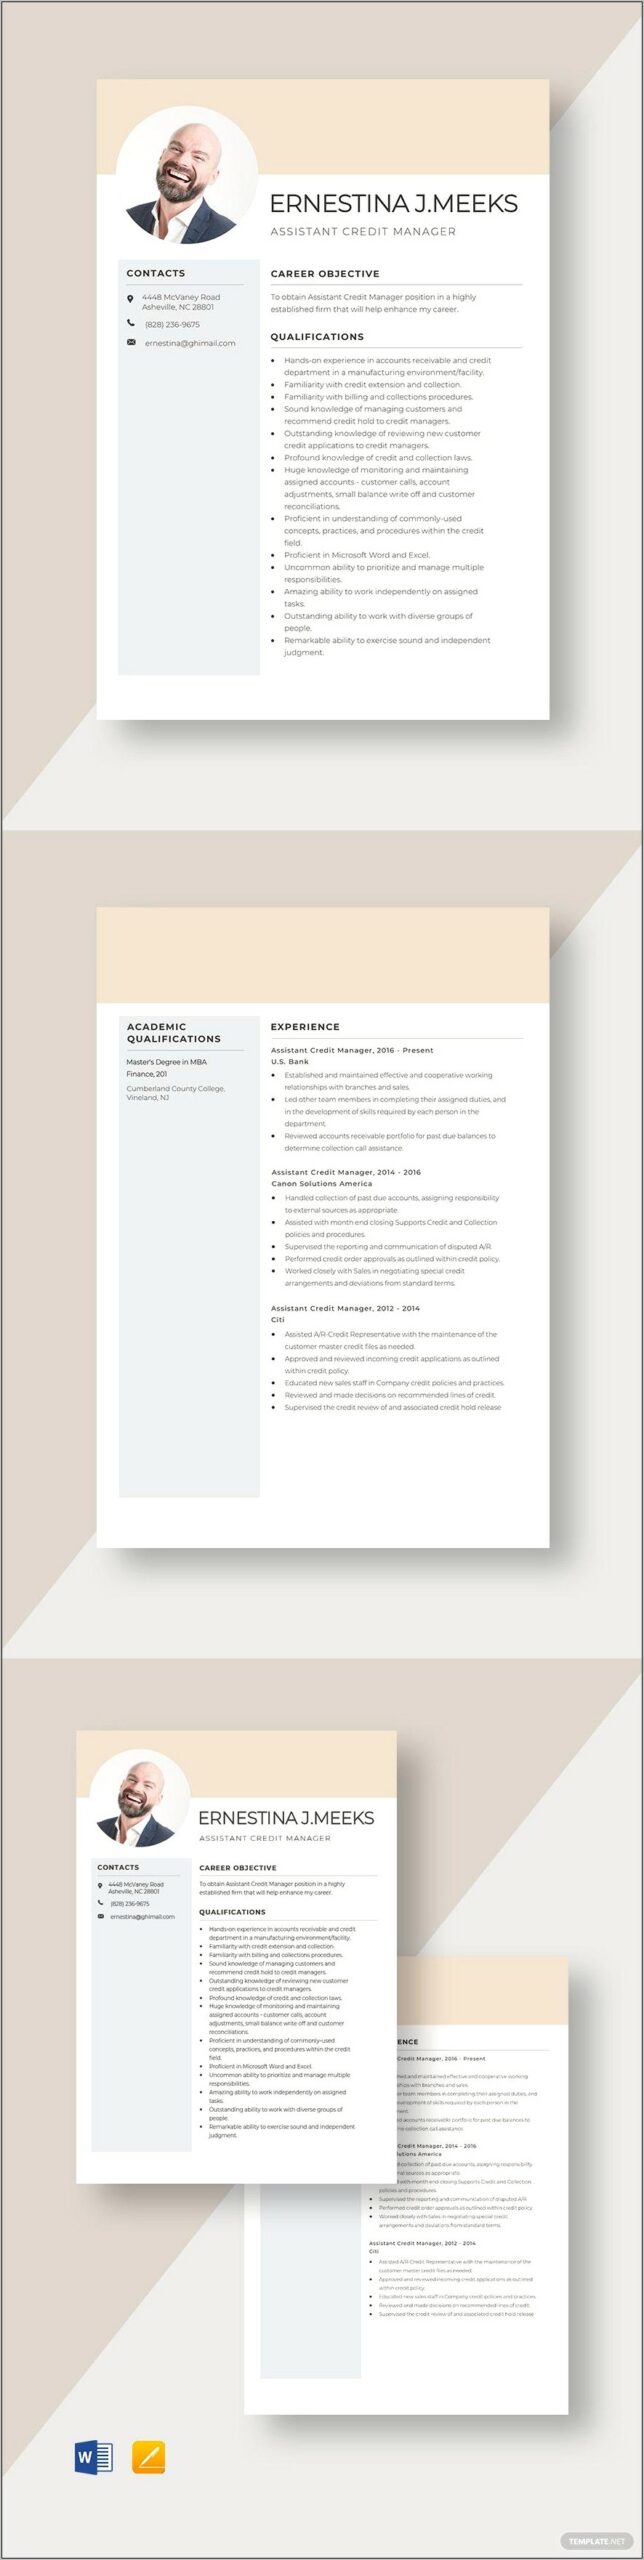 Sample Resume For Plantation Manager